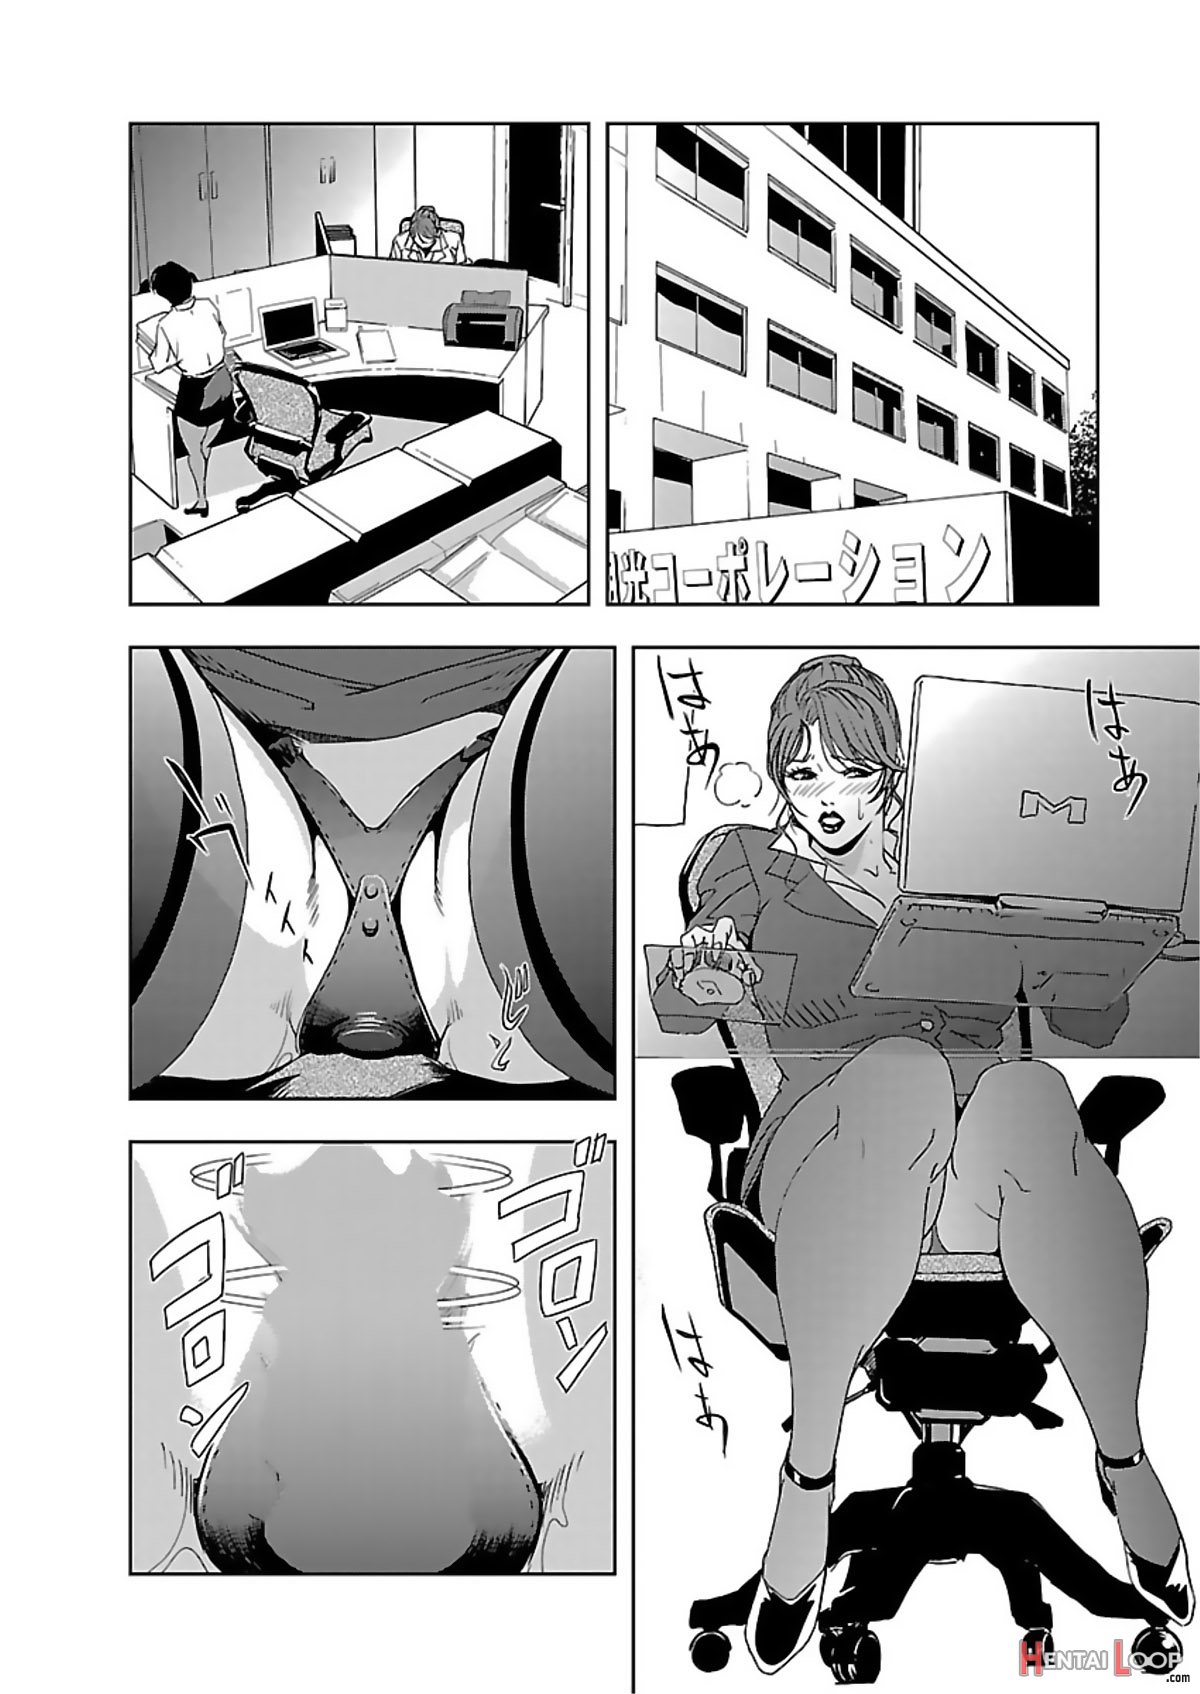 Nikuhisyo Yukiko Volume I Ch. 1-6 page 27